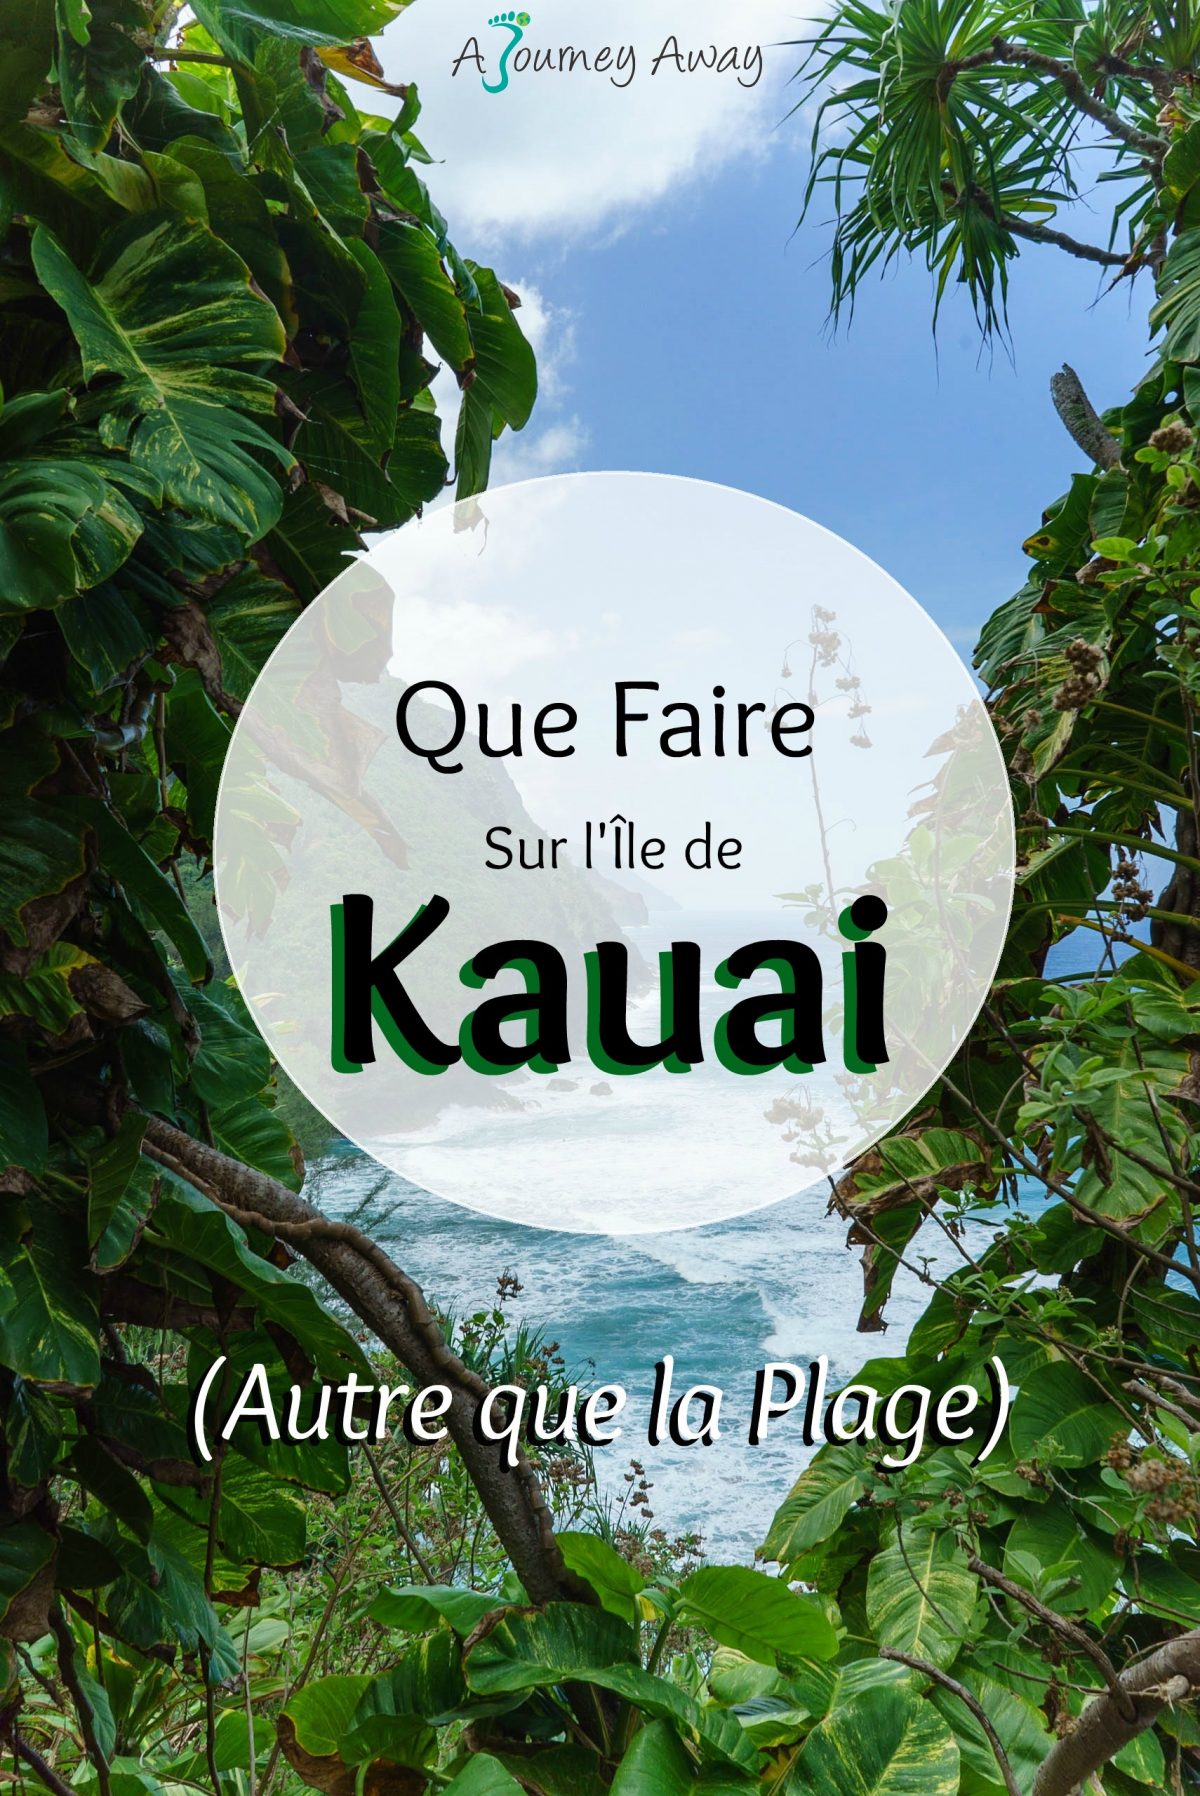 Que Faire sur l’Île de Kauai (Autre que la Plage) | Blog de voyage A Journey Away